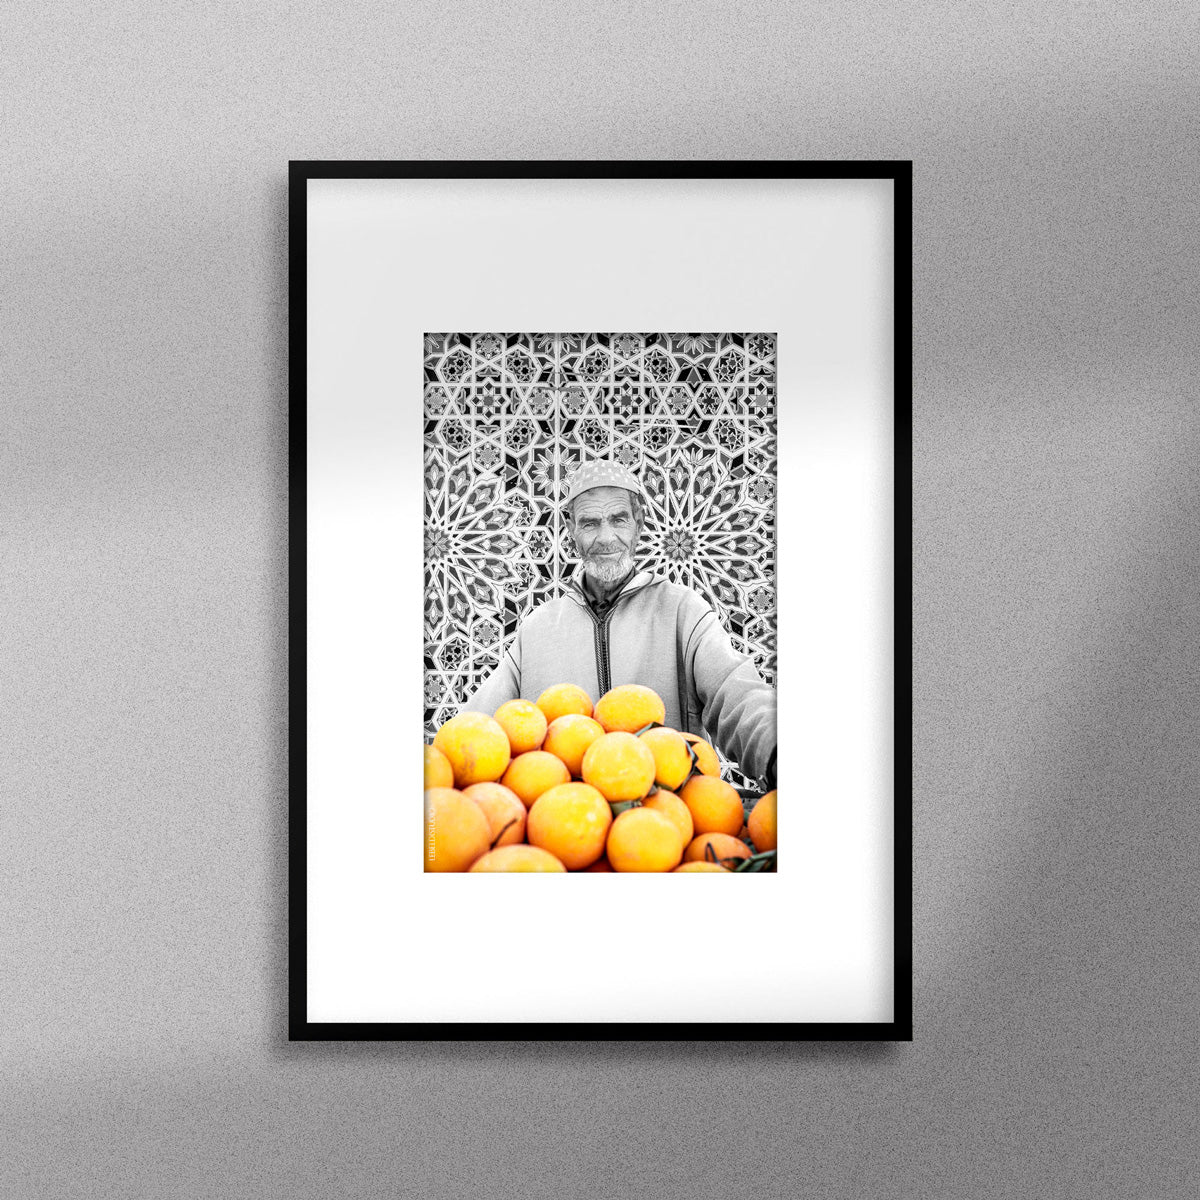 Tableau décoratif en noir et blanc d'un vieux marchand d'oranges très souriant, encadré dans un cadre noir - Format A4.